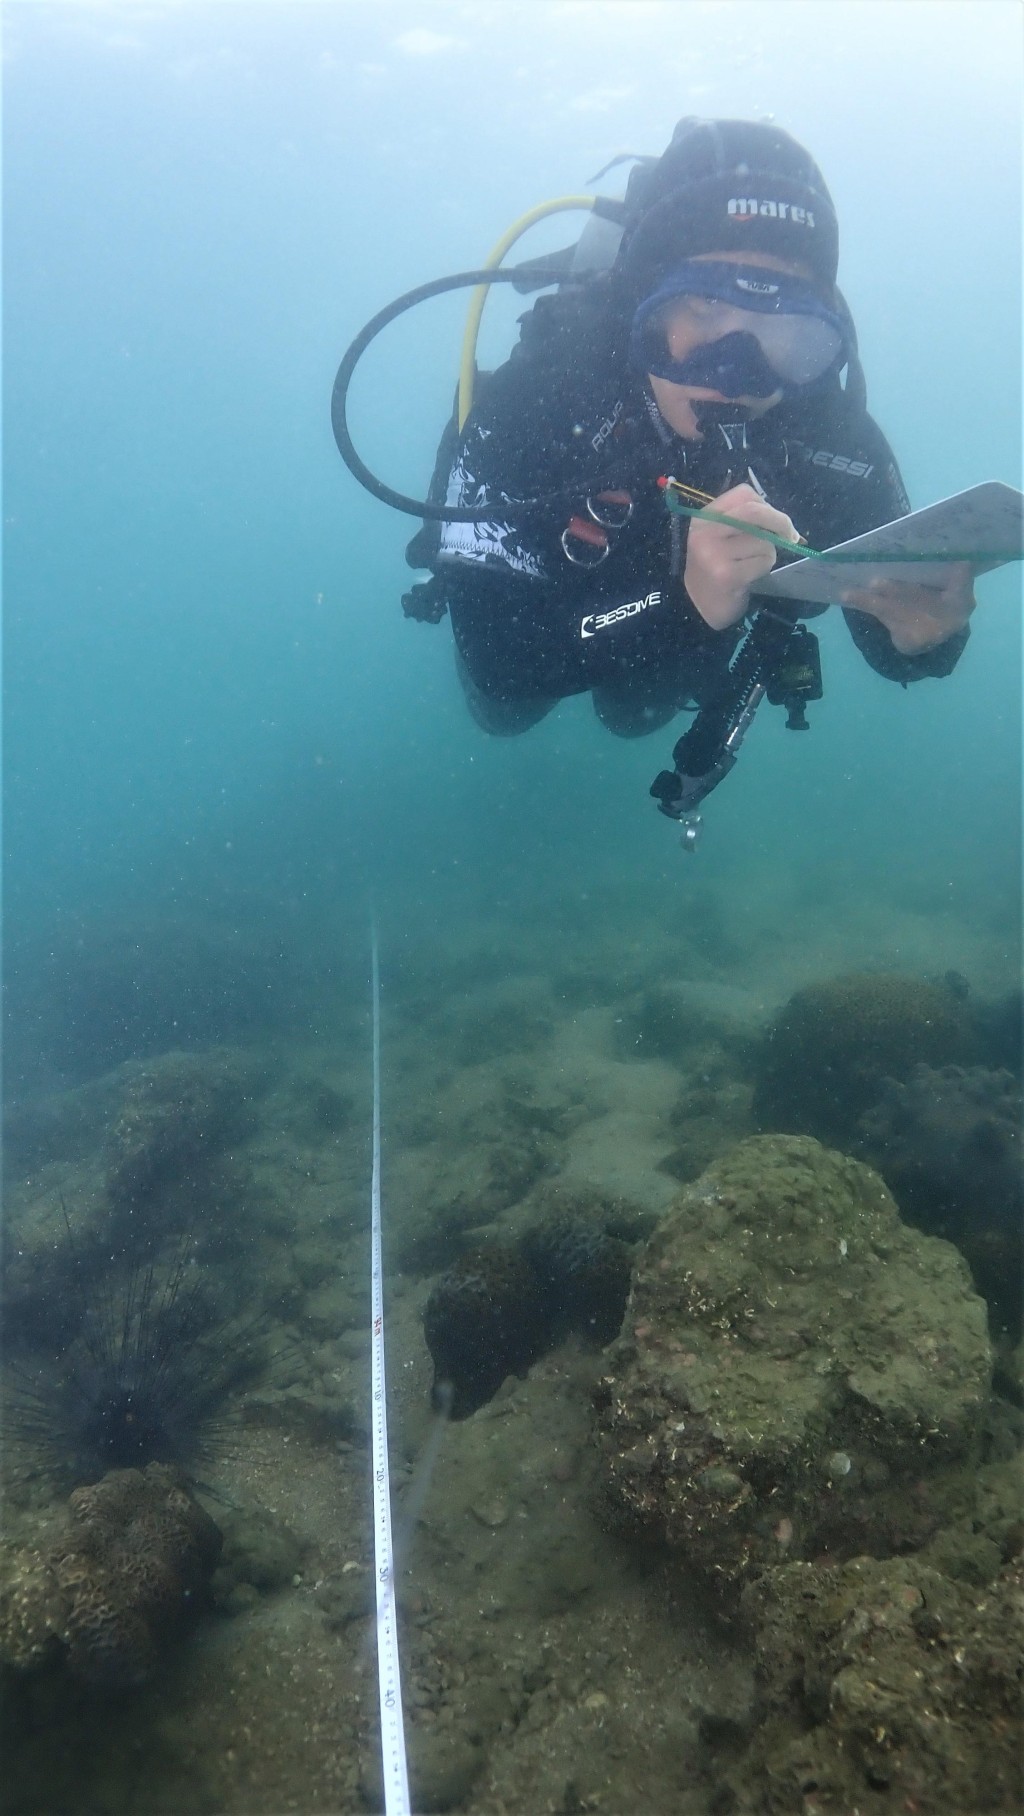 珊瑚礁普查員進行珊瑚調查。政府新聞處